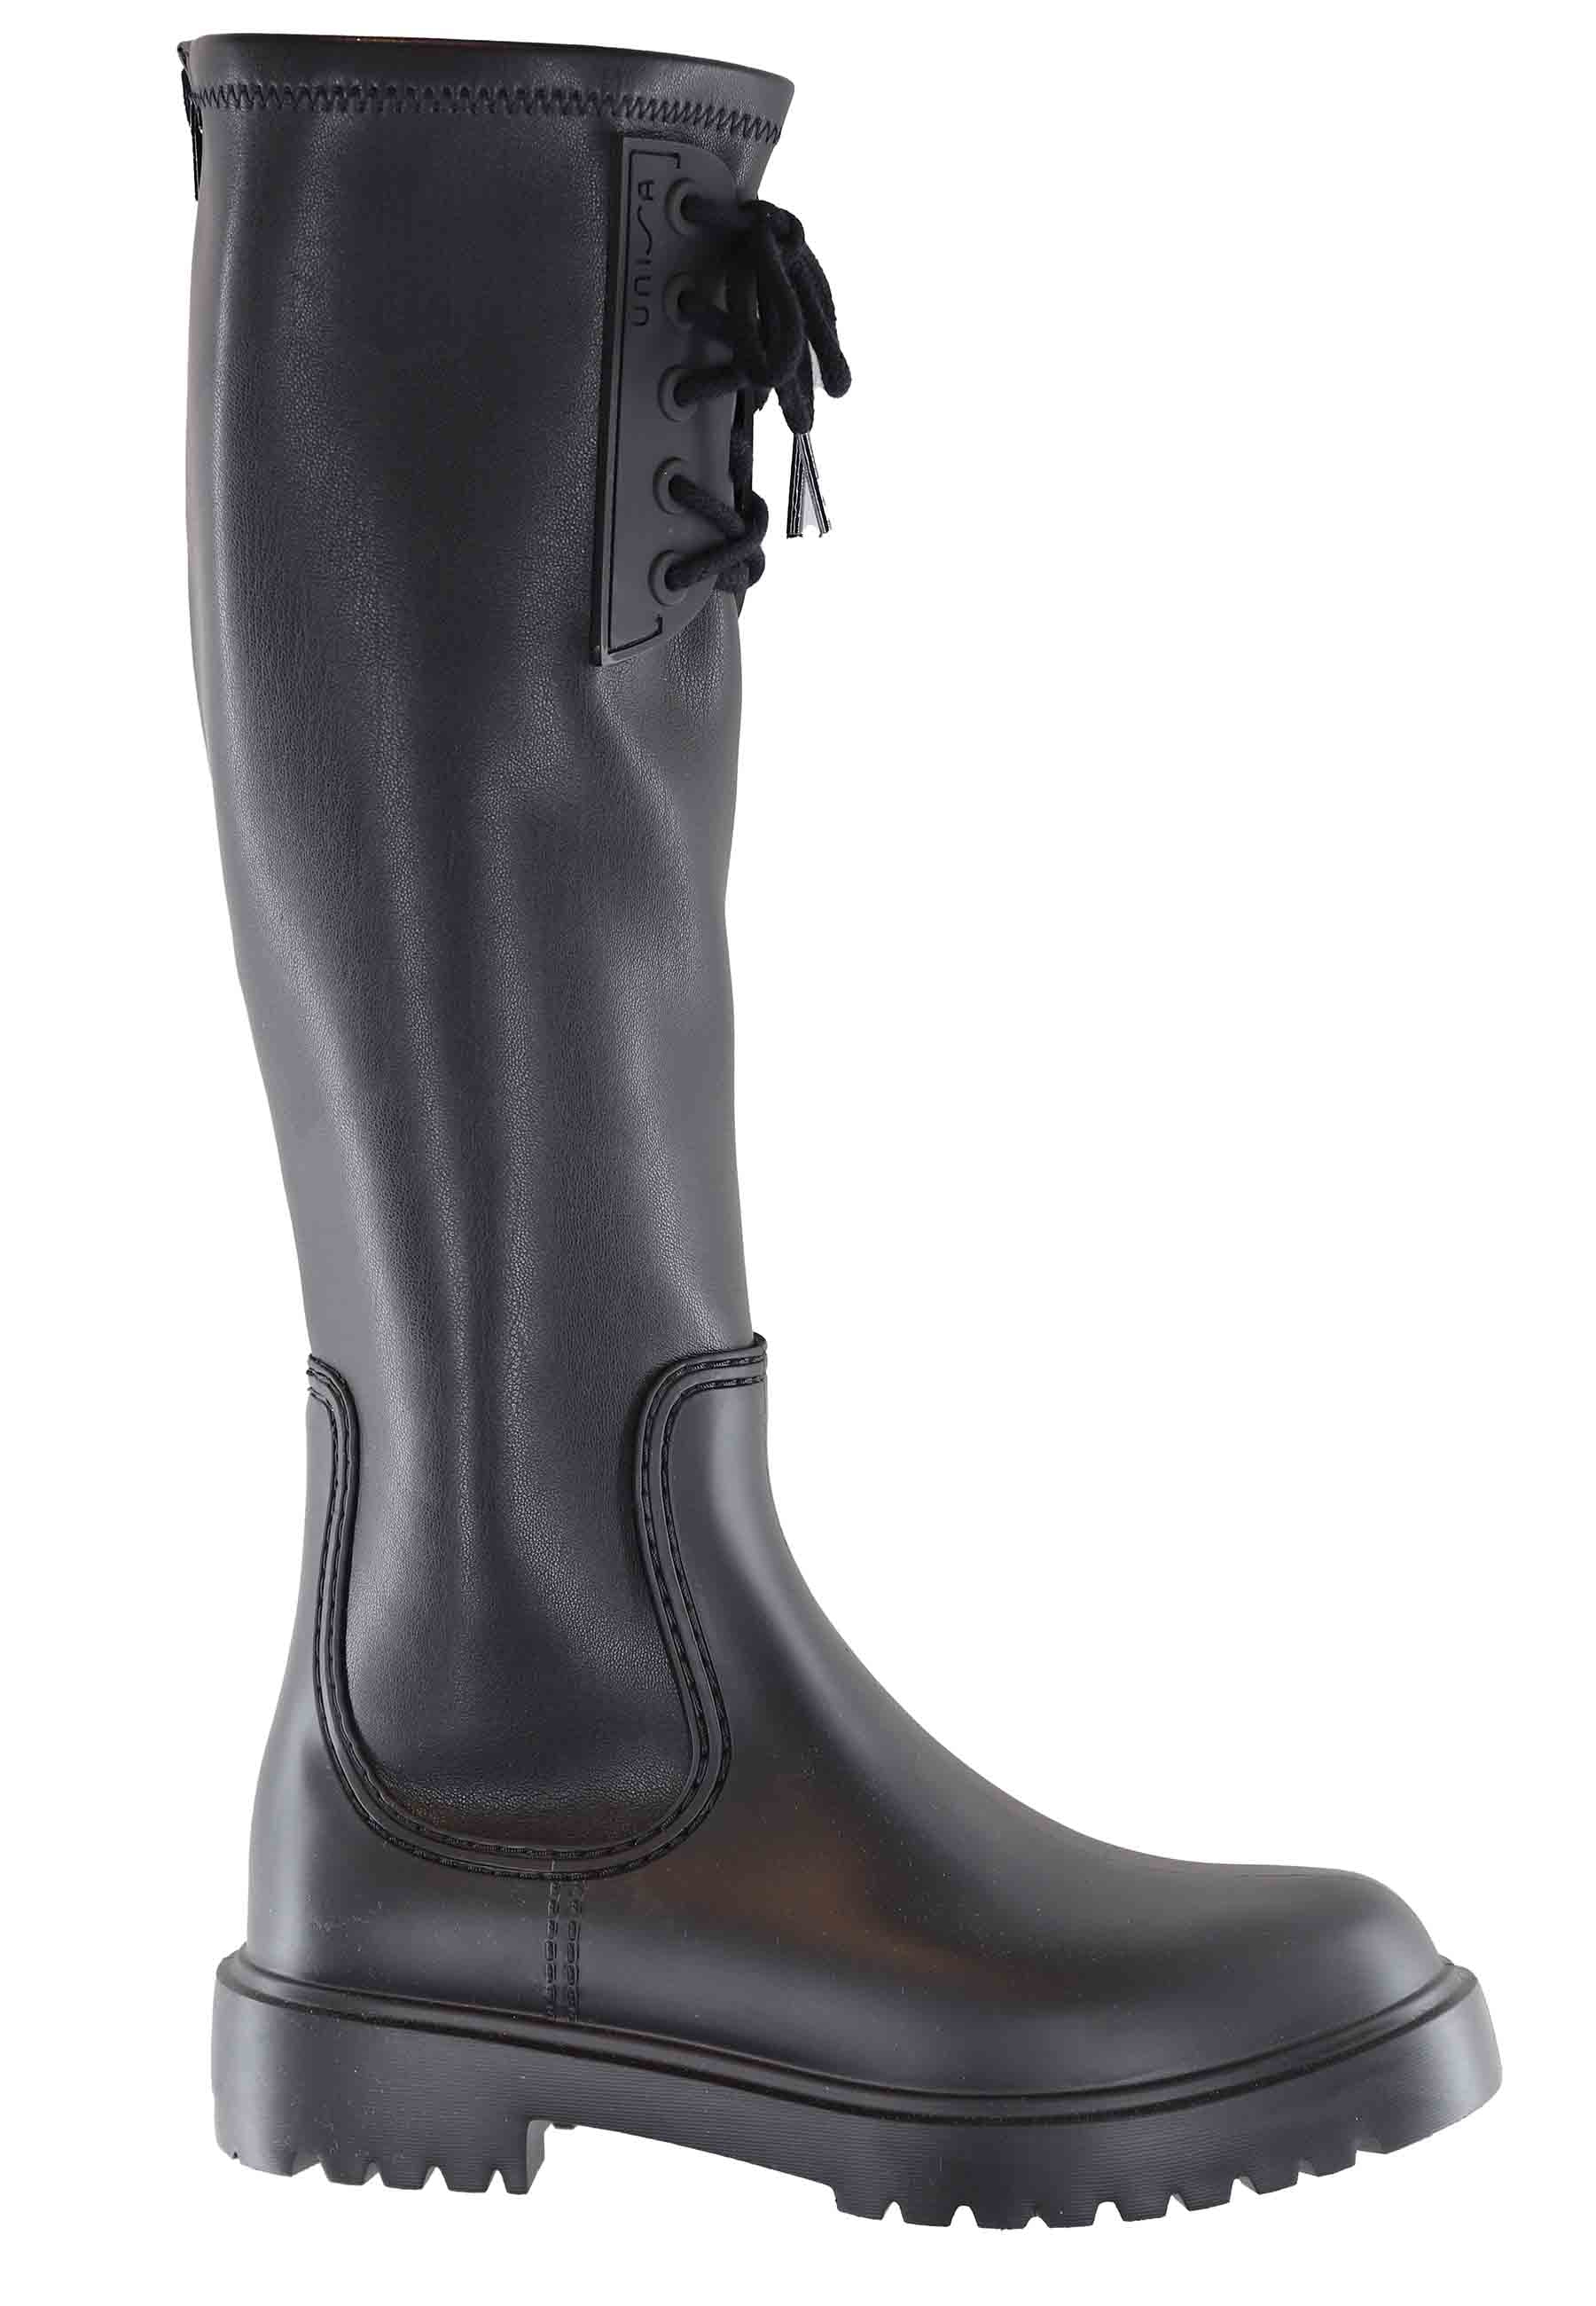 Women's rain boots in black PVC